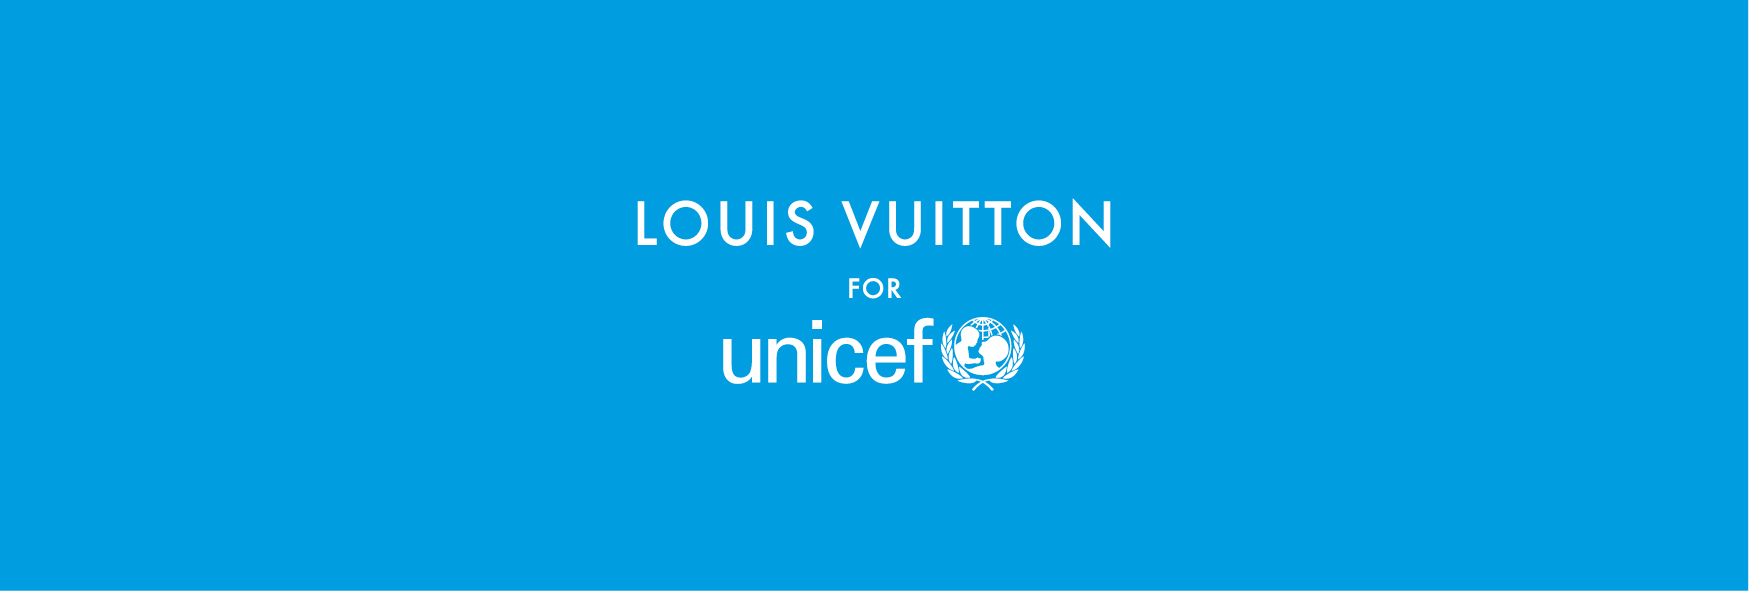 Louis Vuitton Announces UNICEF Donation